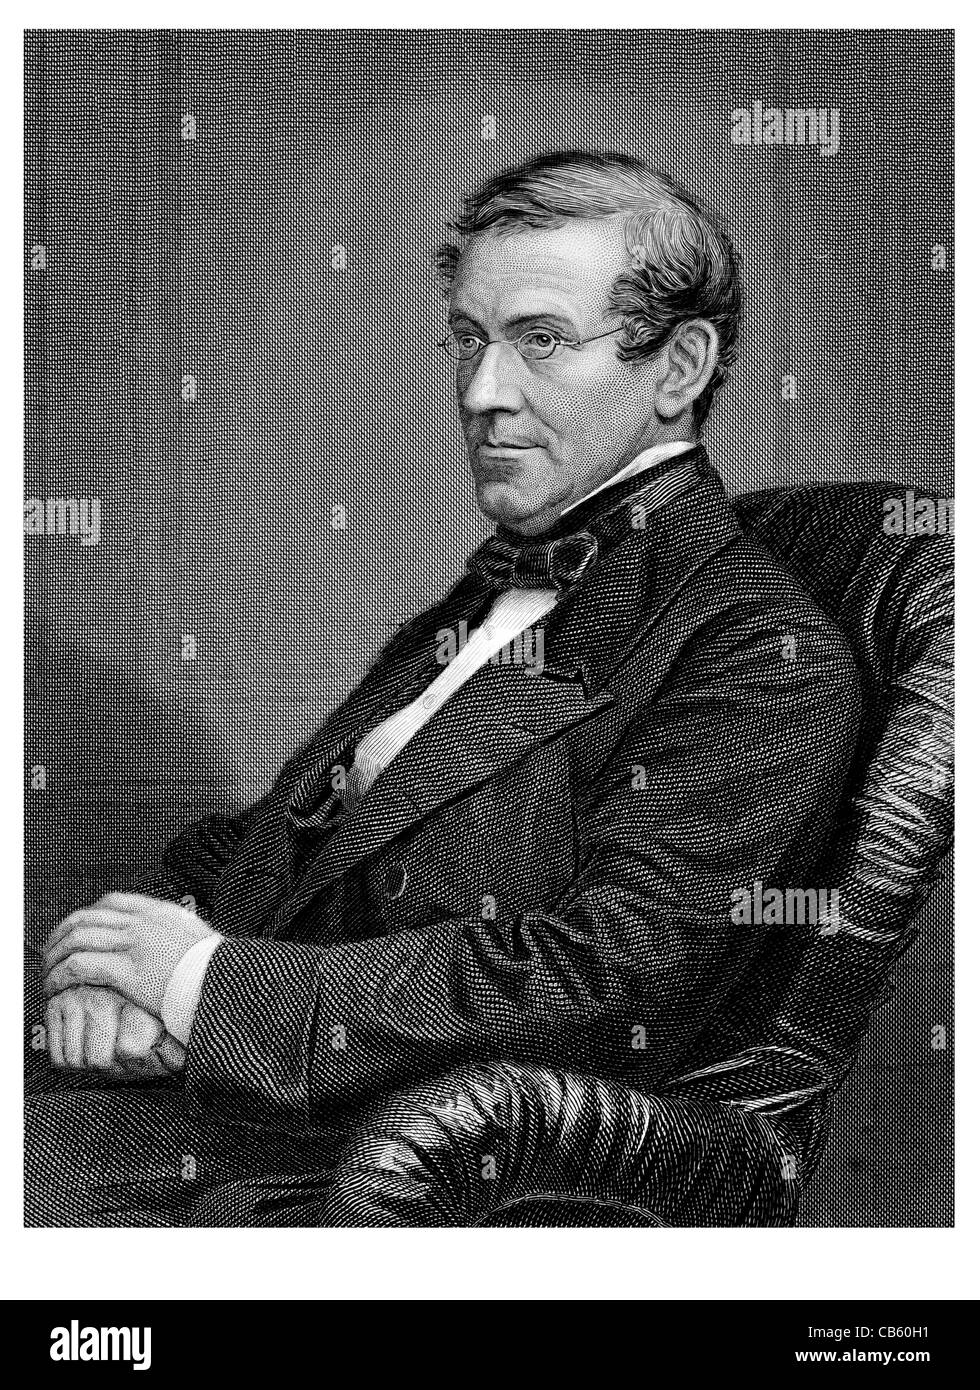 Sir Charles Wheatstone 18021875 scientifique Anglais inventeur de la science de l'ère victorienne de télégraphe électrique Vitesse Spectroscopie Banque D'Images